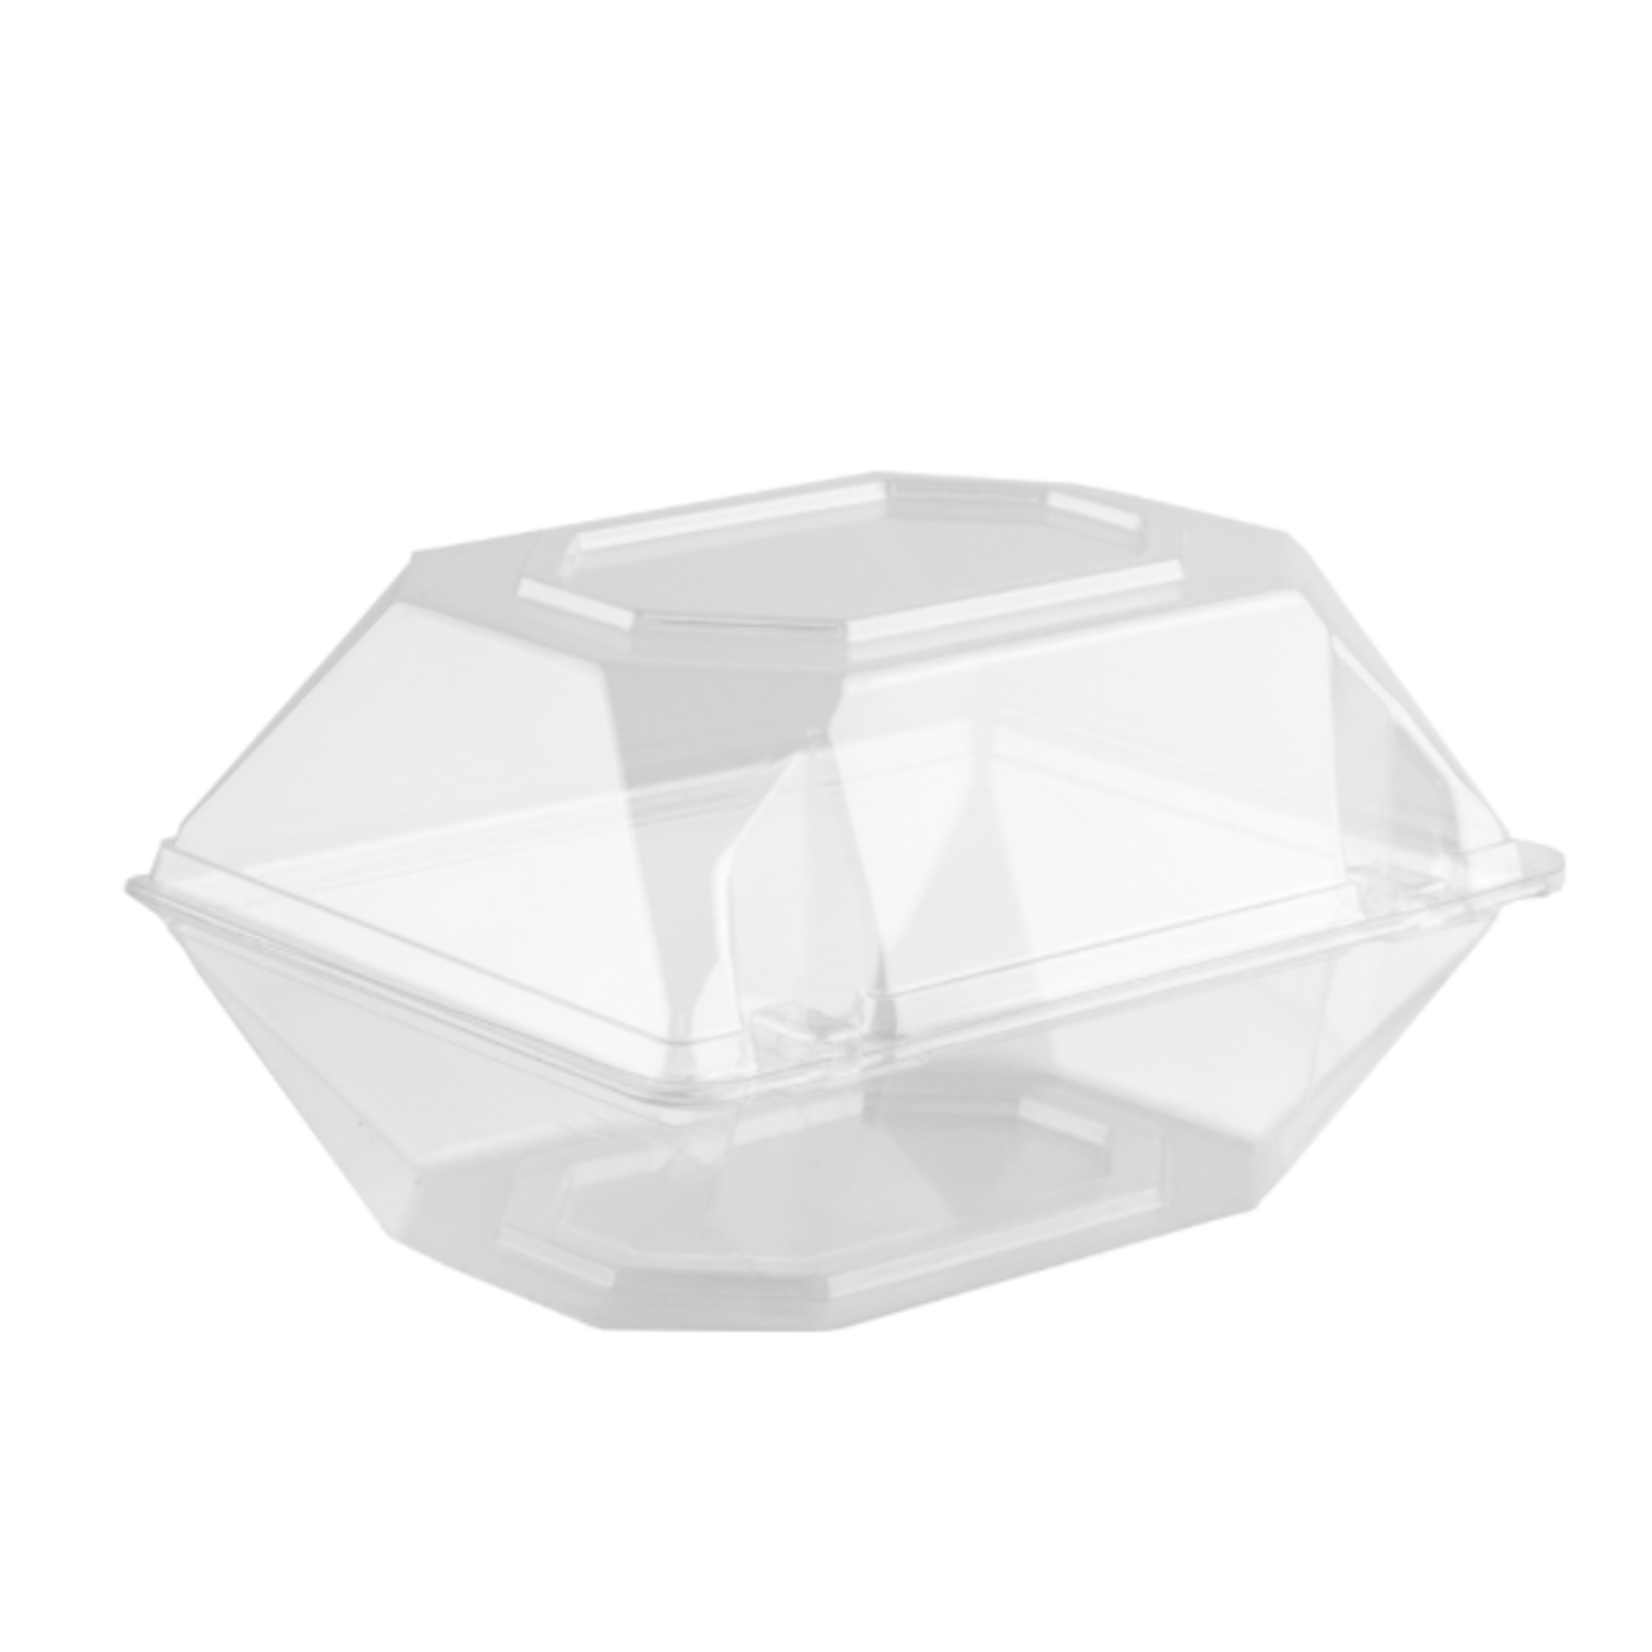 6"x5"x4" Corsage Box - Crystal